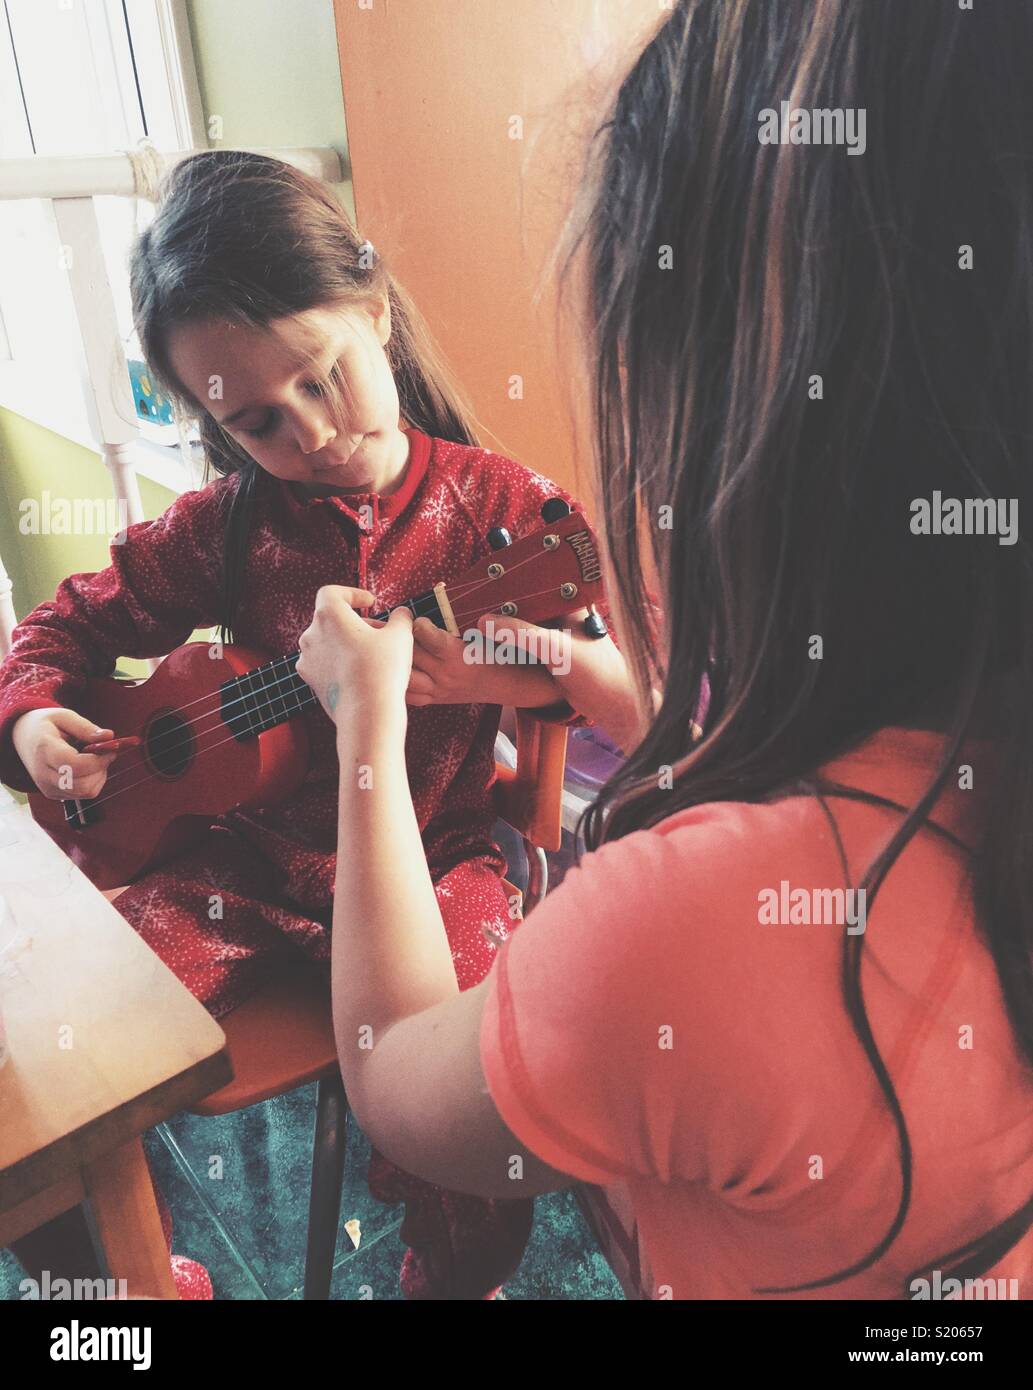 Big Sister hermanita enseñar cómo jugar a ukulele Foto de stock